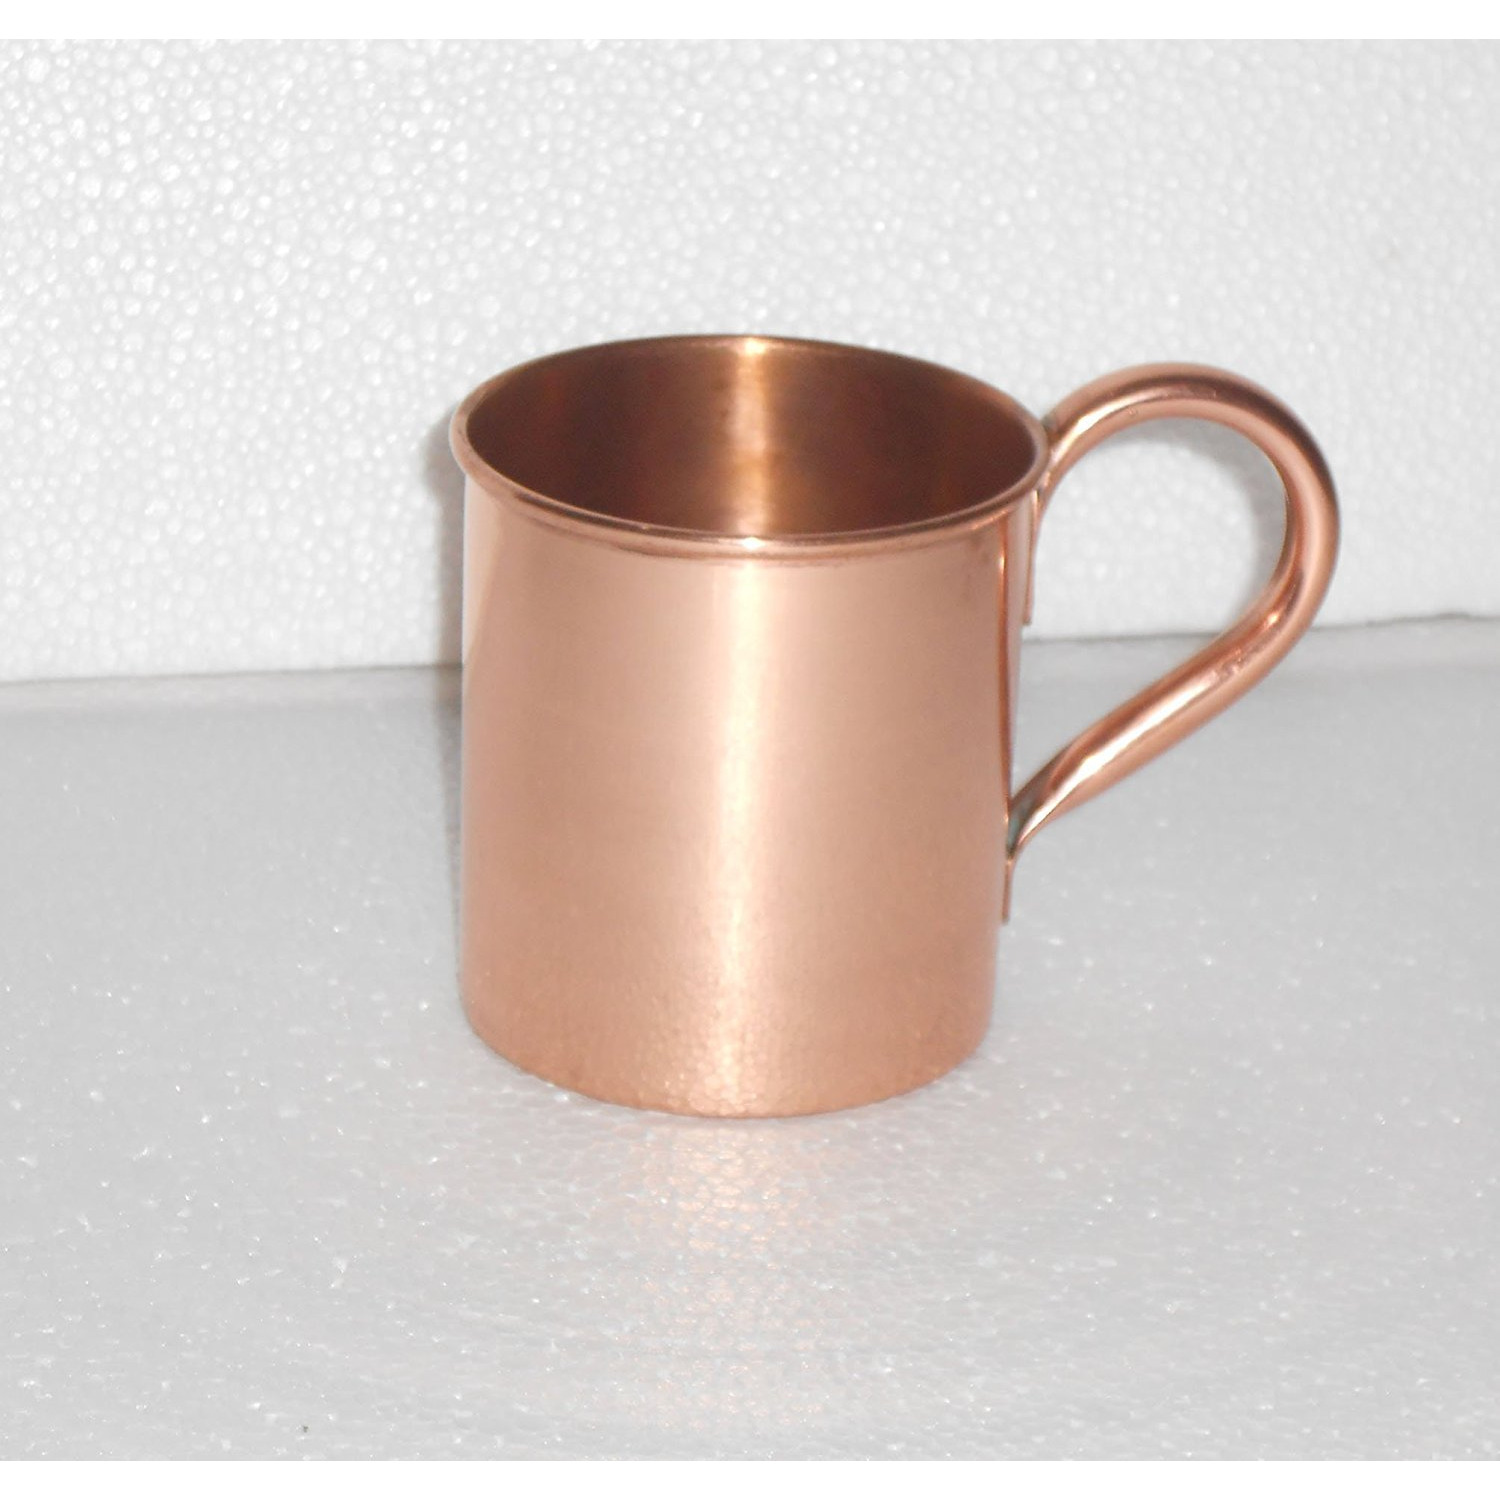 Winmaarc 100% Pure Heavy Gauge Copper Moscow Mule Mugs Set of 2 15 OZ